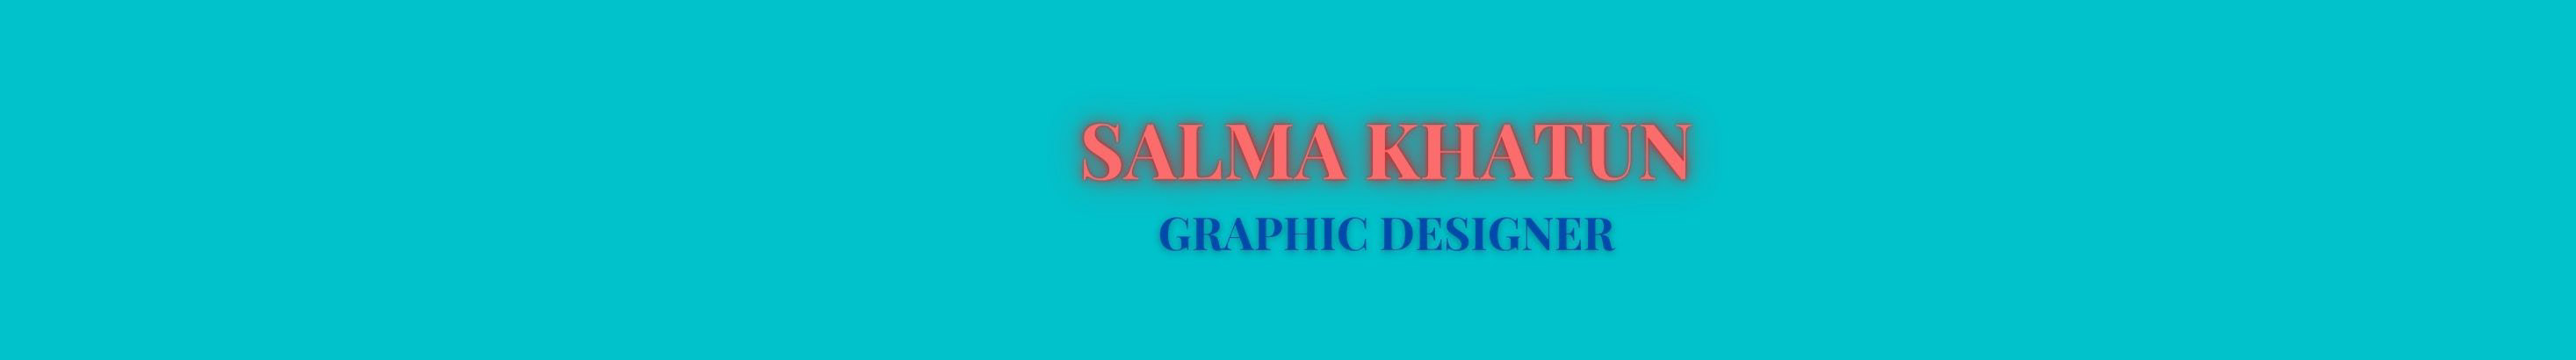 SALMA KHATUN's profile banner